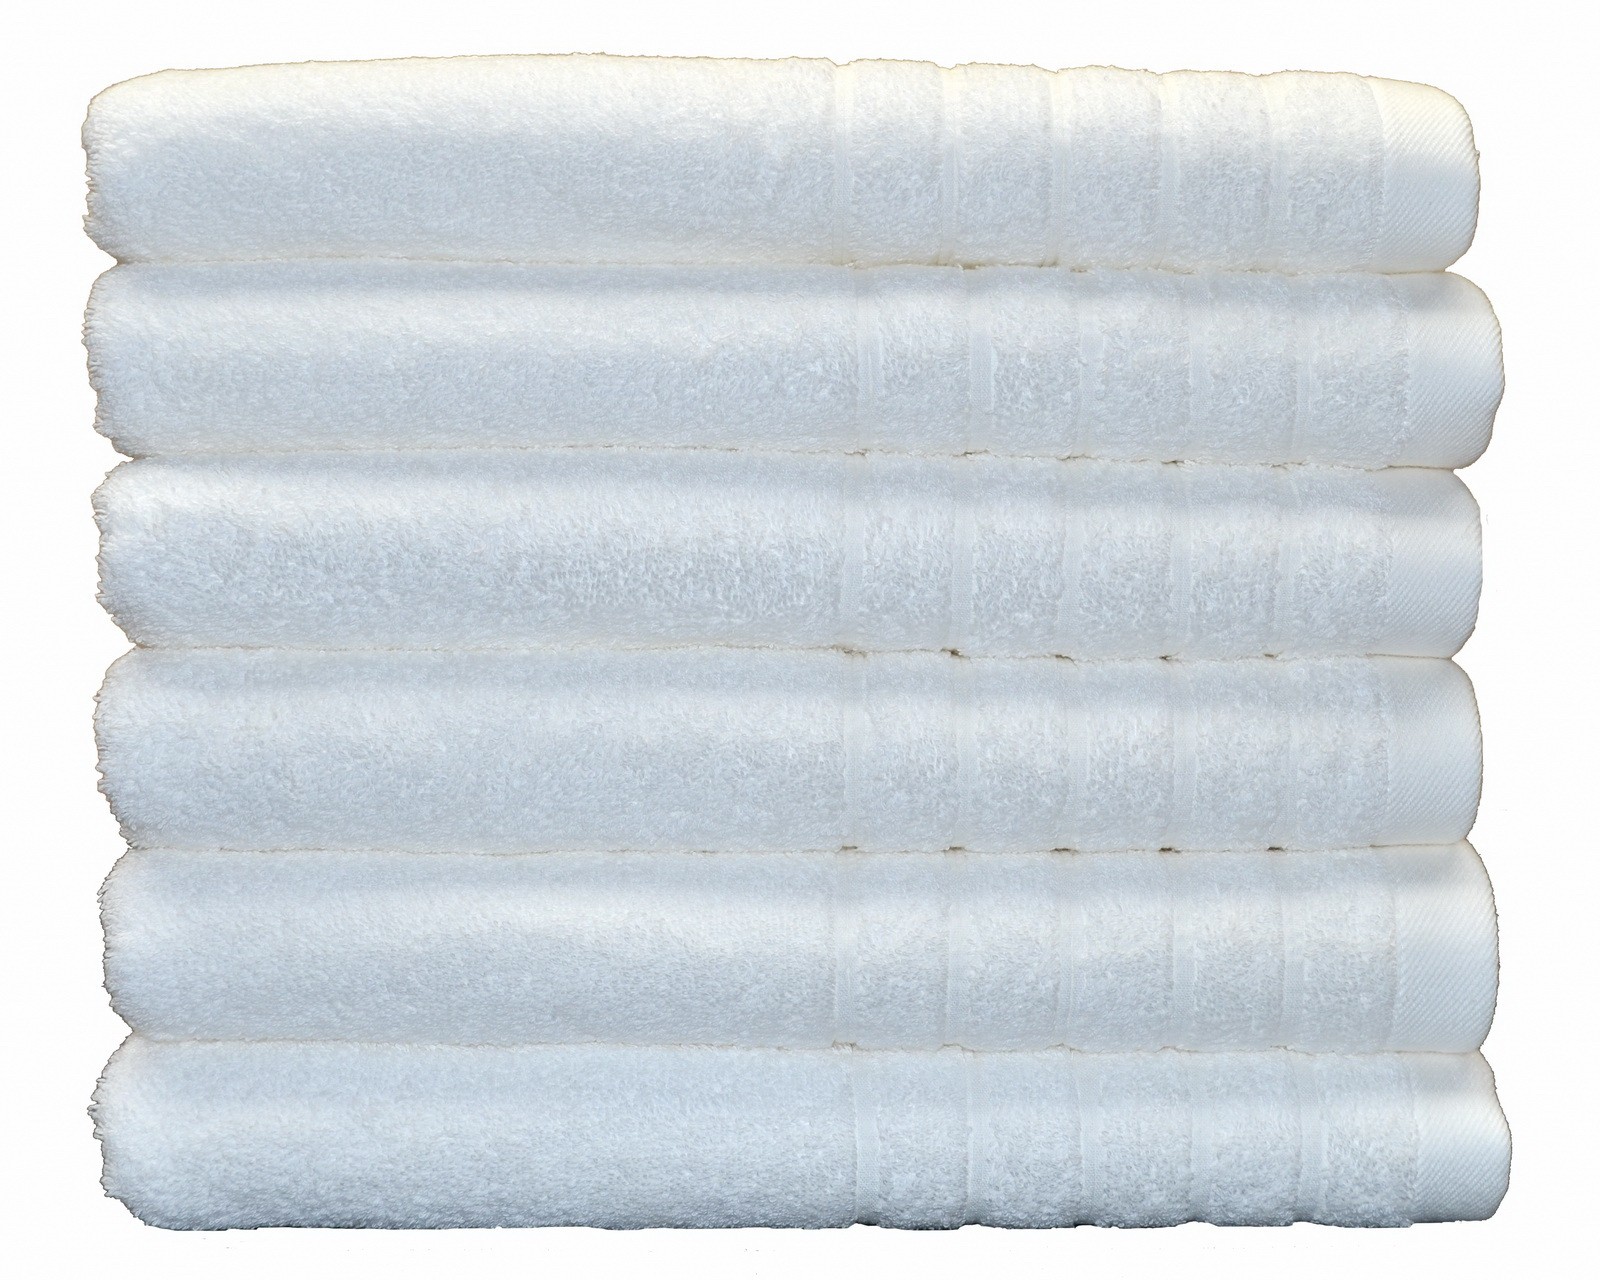 Egyptian cotton bath towel white color